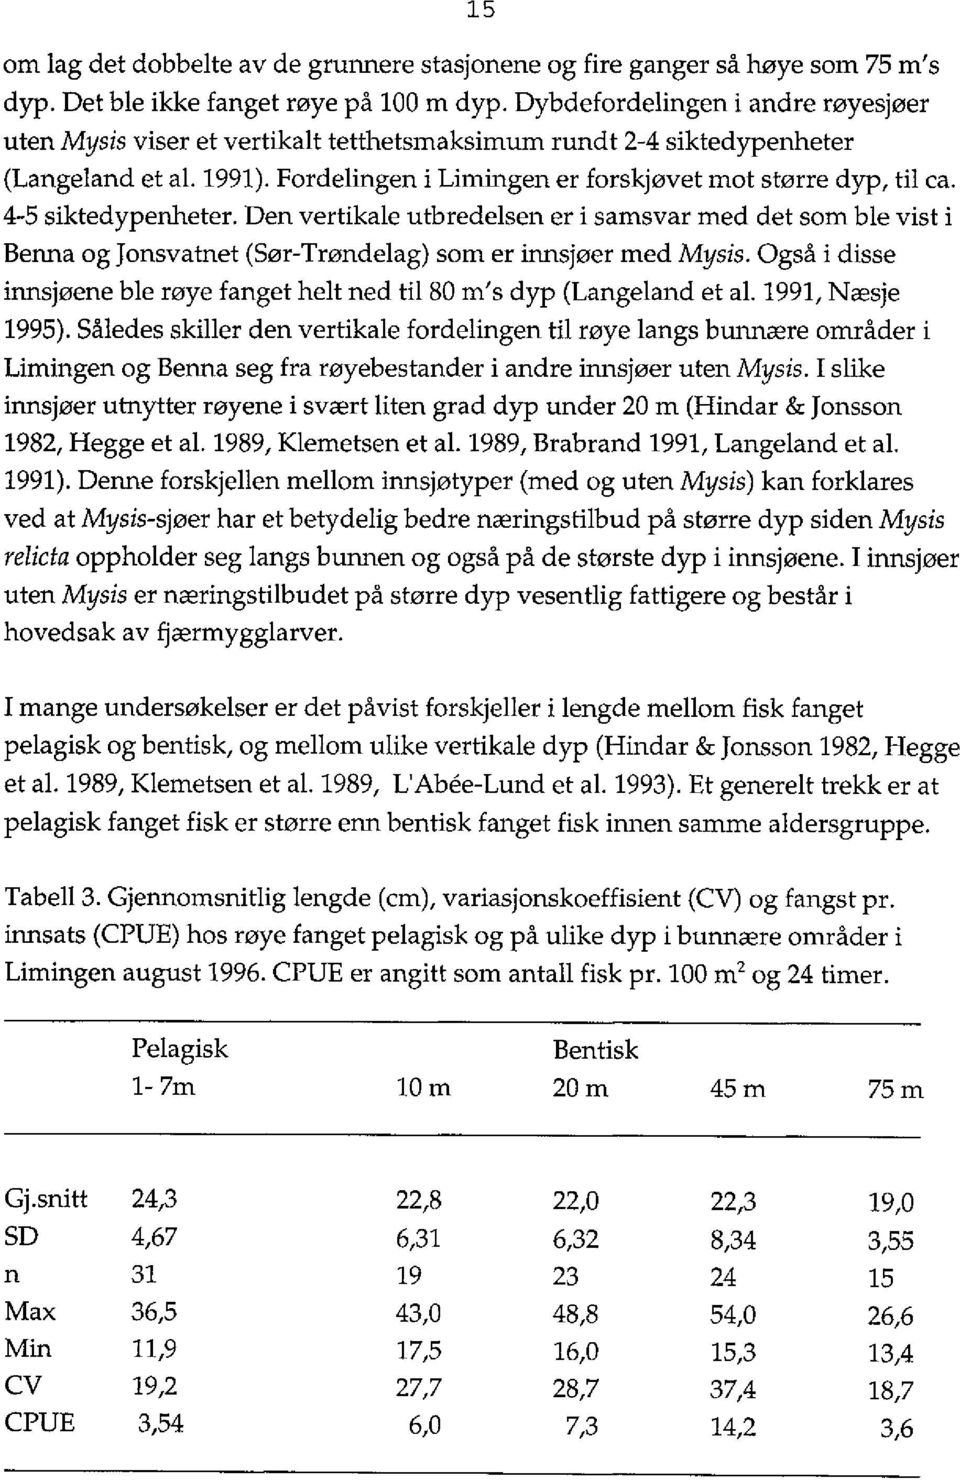 4-5 siktedypenheter. Den vertikale utbredelsen er i samsvar med det som ble vist i Benna og Jonsvatnet (Sør-Trøndelag) som er innsjøer med Mysis.